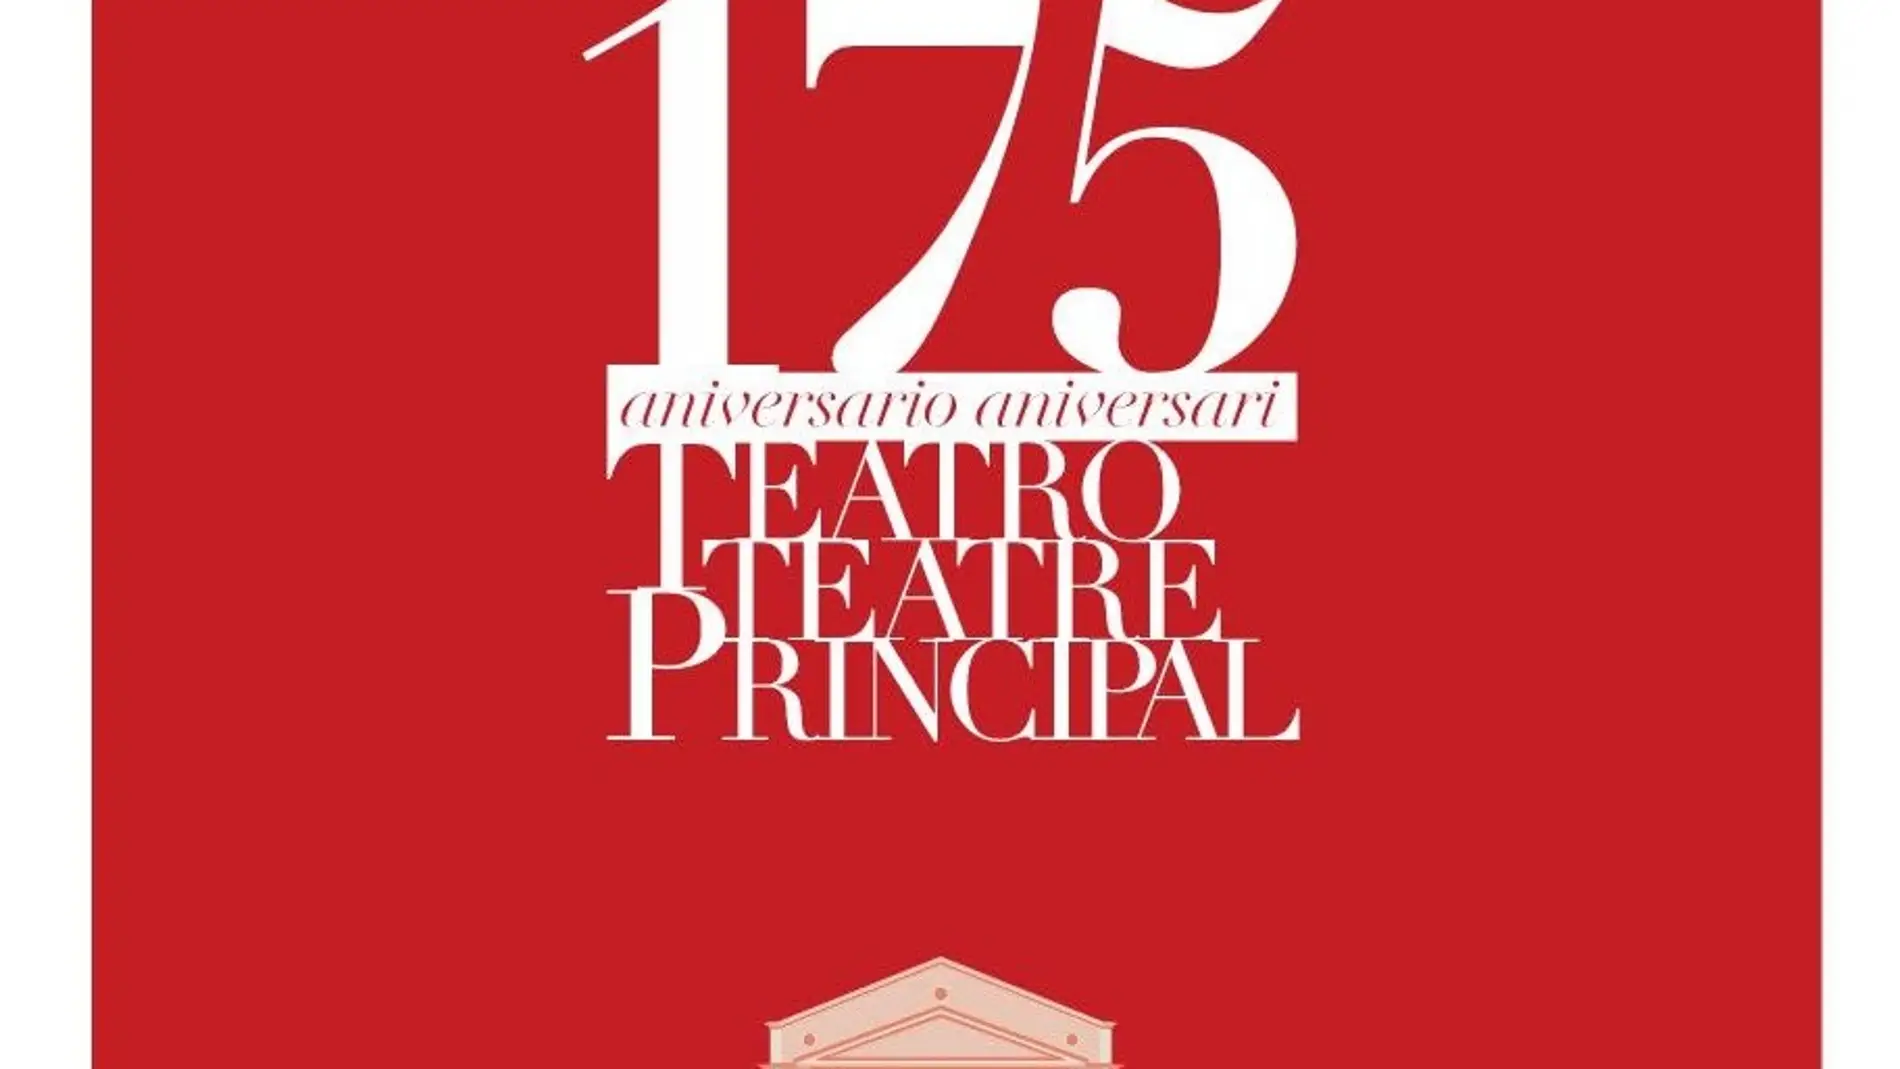 Cartel de la exposición sobre el '175 aniversario del Teatro Principal'